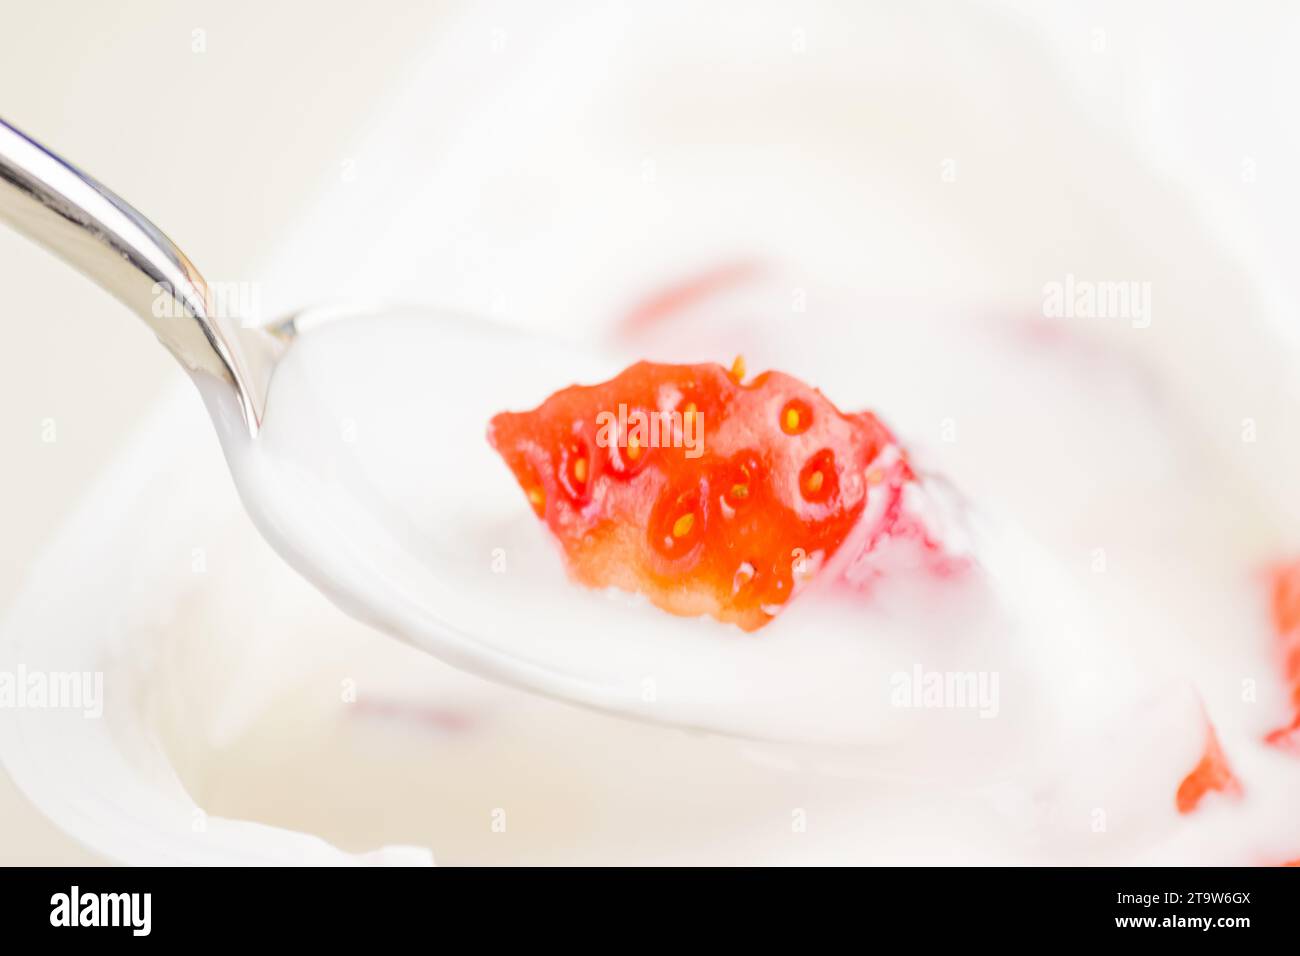 primo piano di fragola sana e yogurt bianco sul cucchiaio, concetto di nutrizione alimentare sana Foto Stock